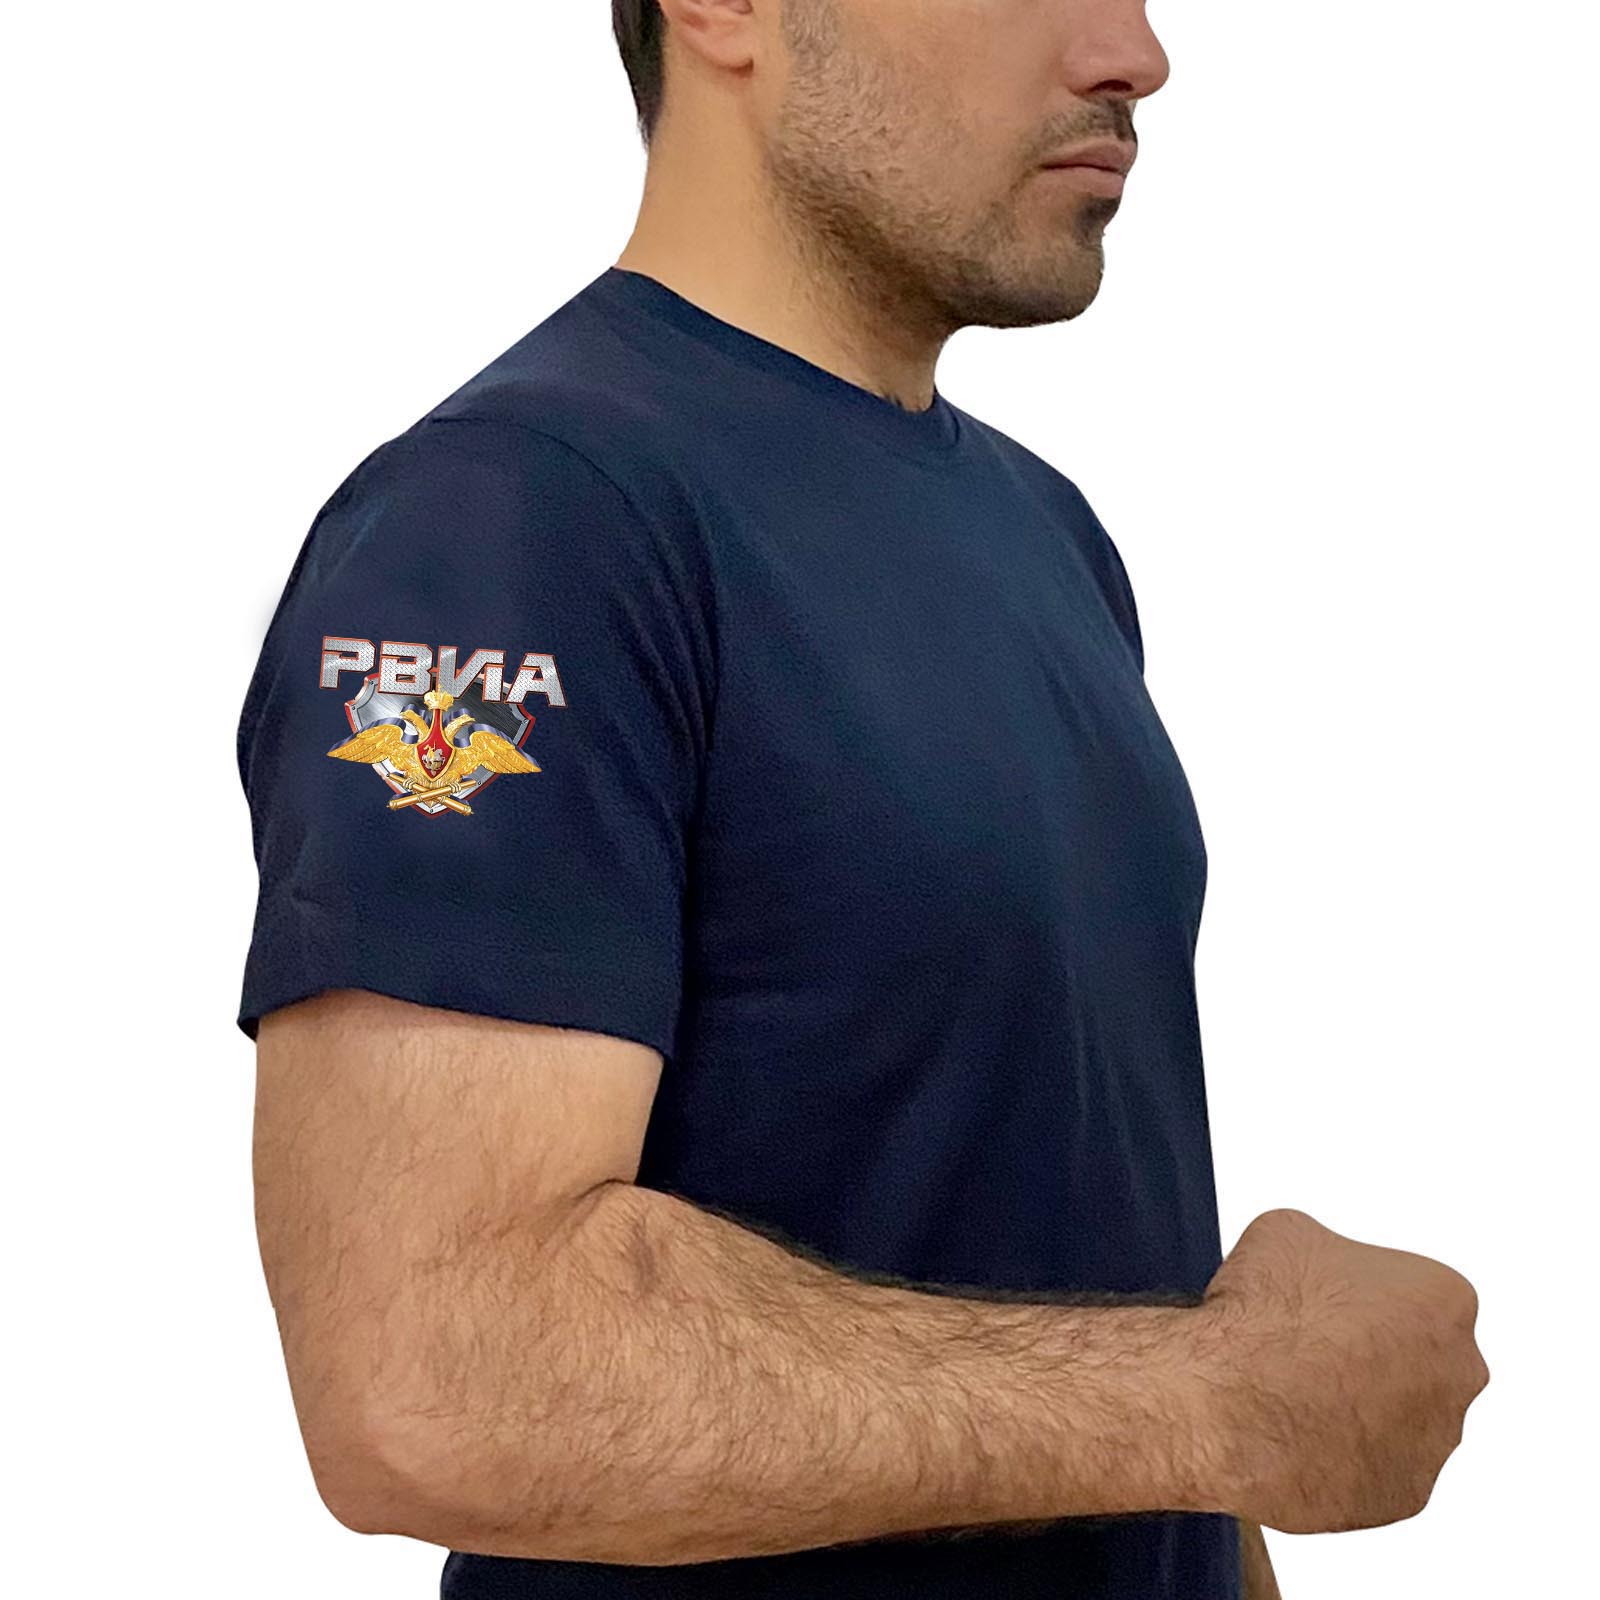 Купить удобную темно-синюю футболку с термотрансфером РВиА выгодно